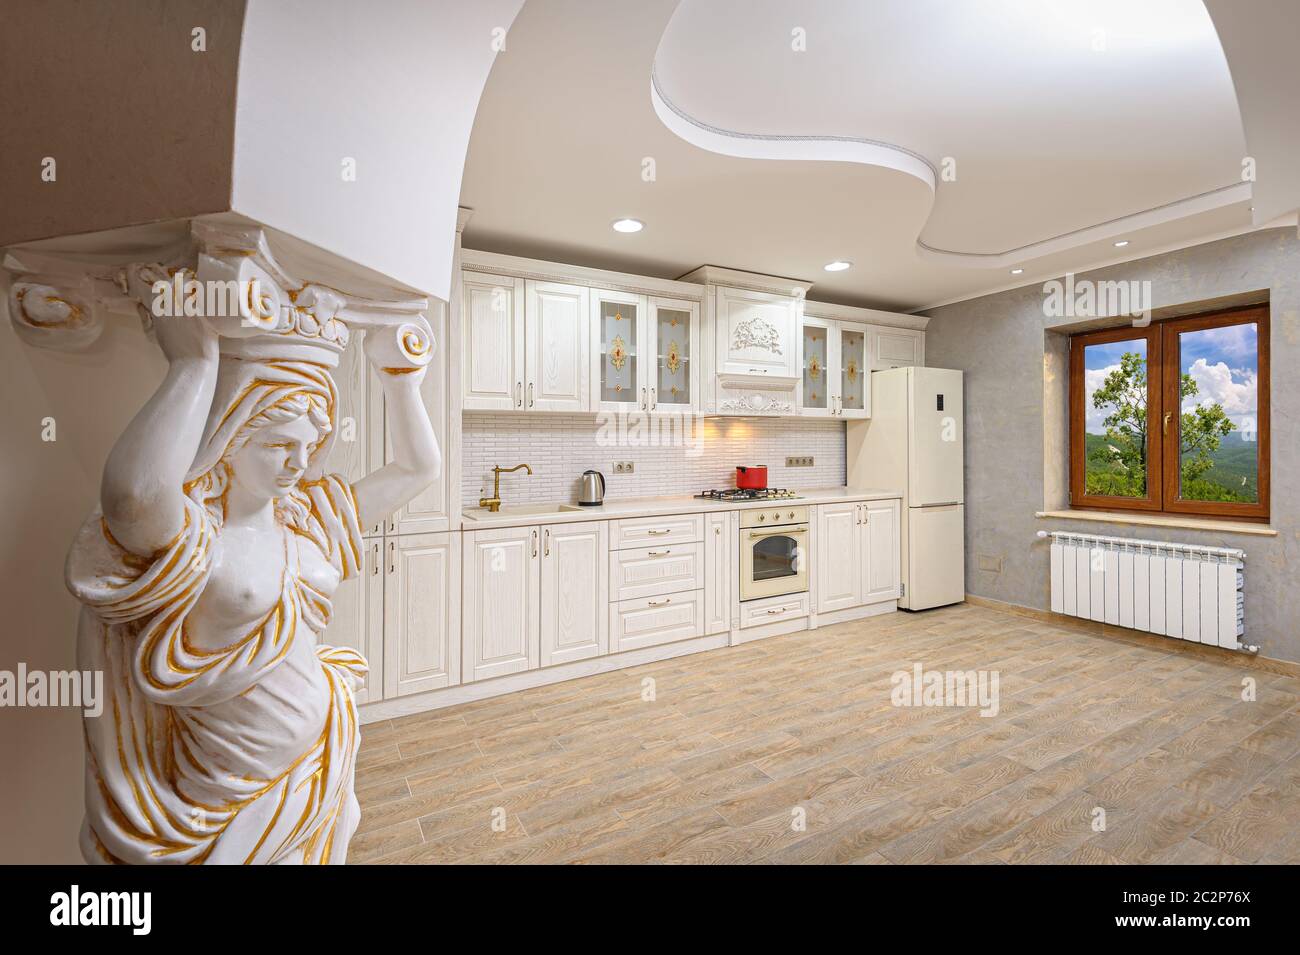 Luxury modern white and beige kitchen interior Stock Photo